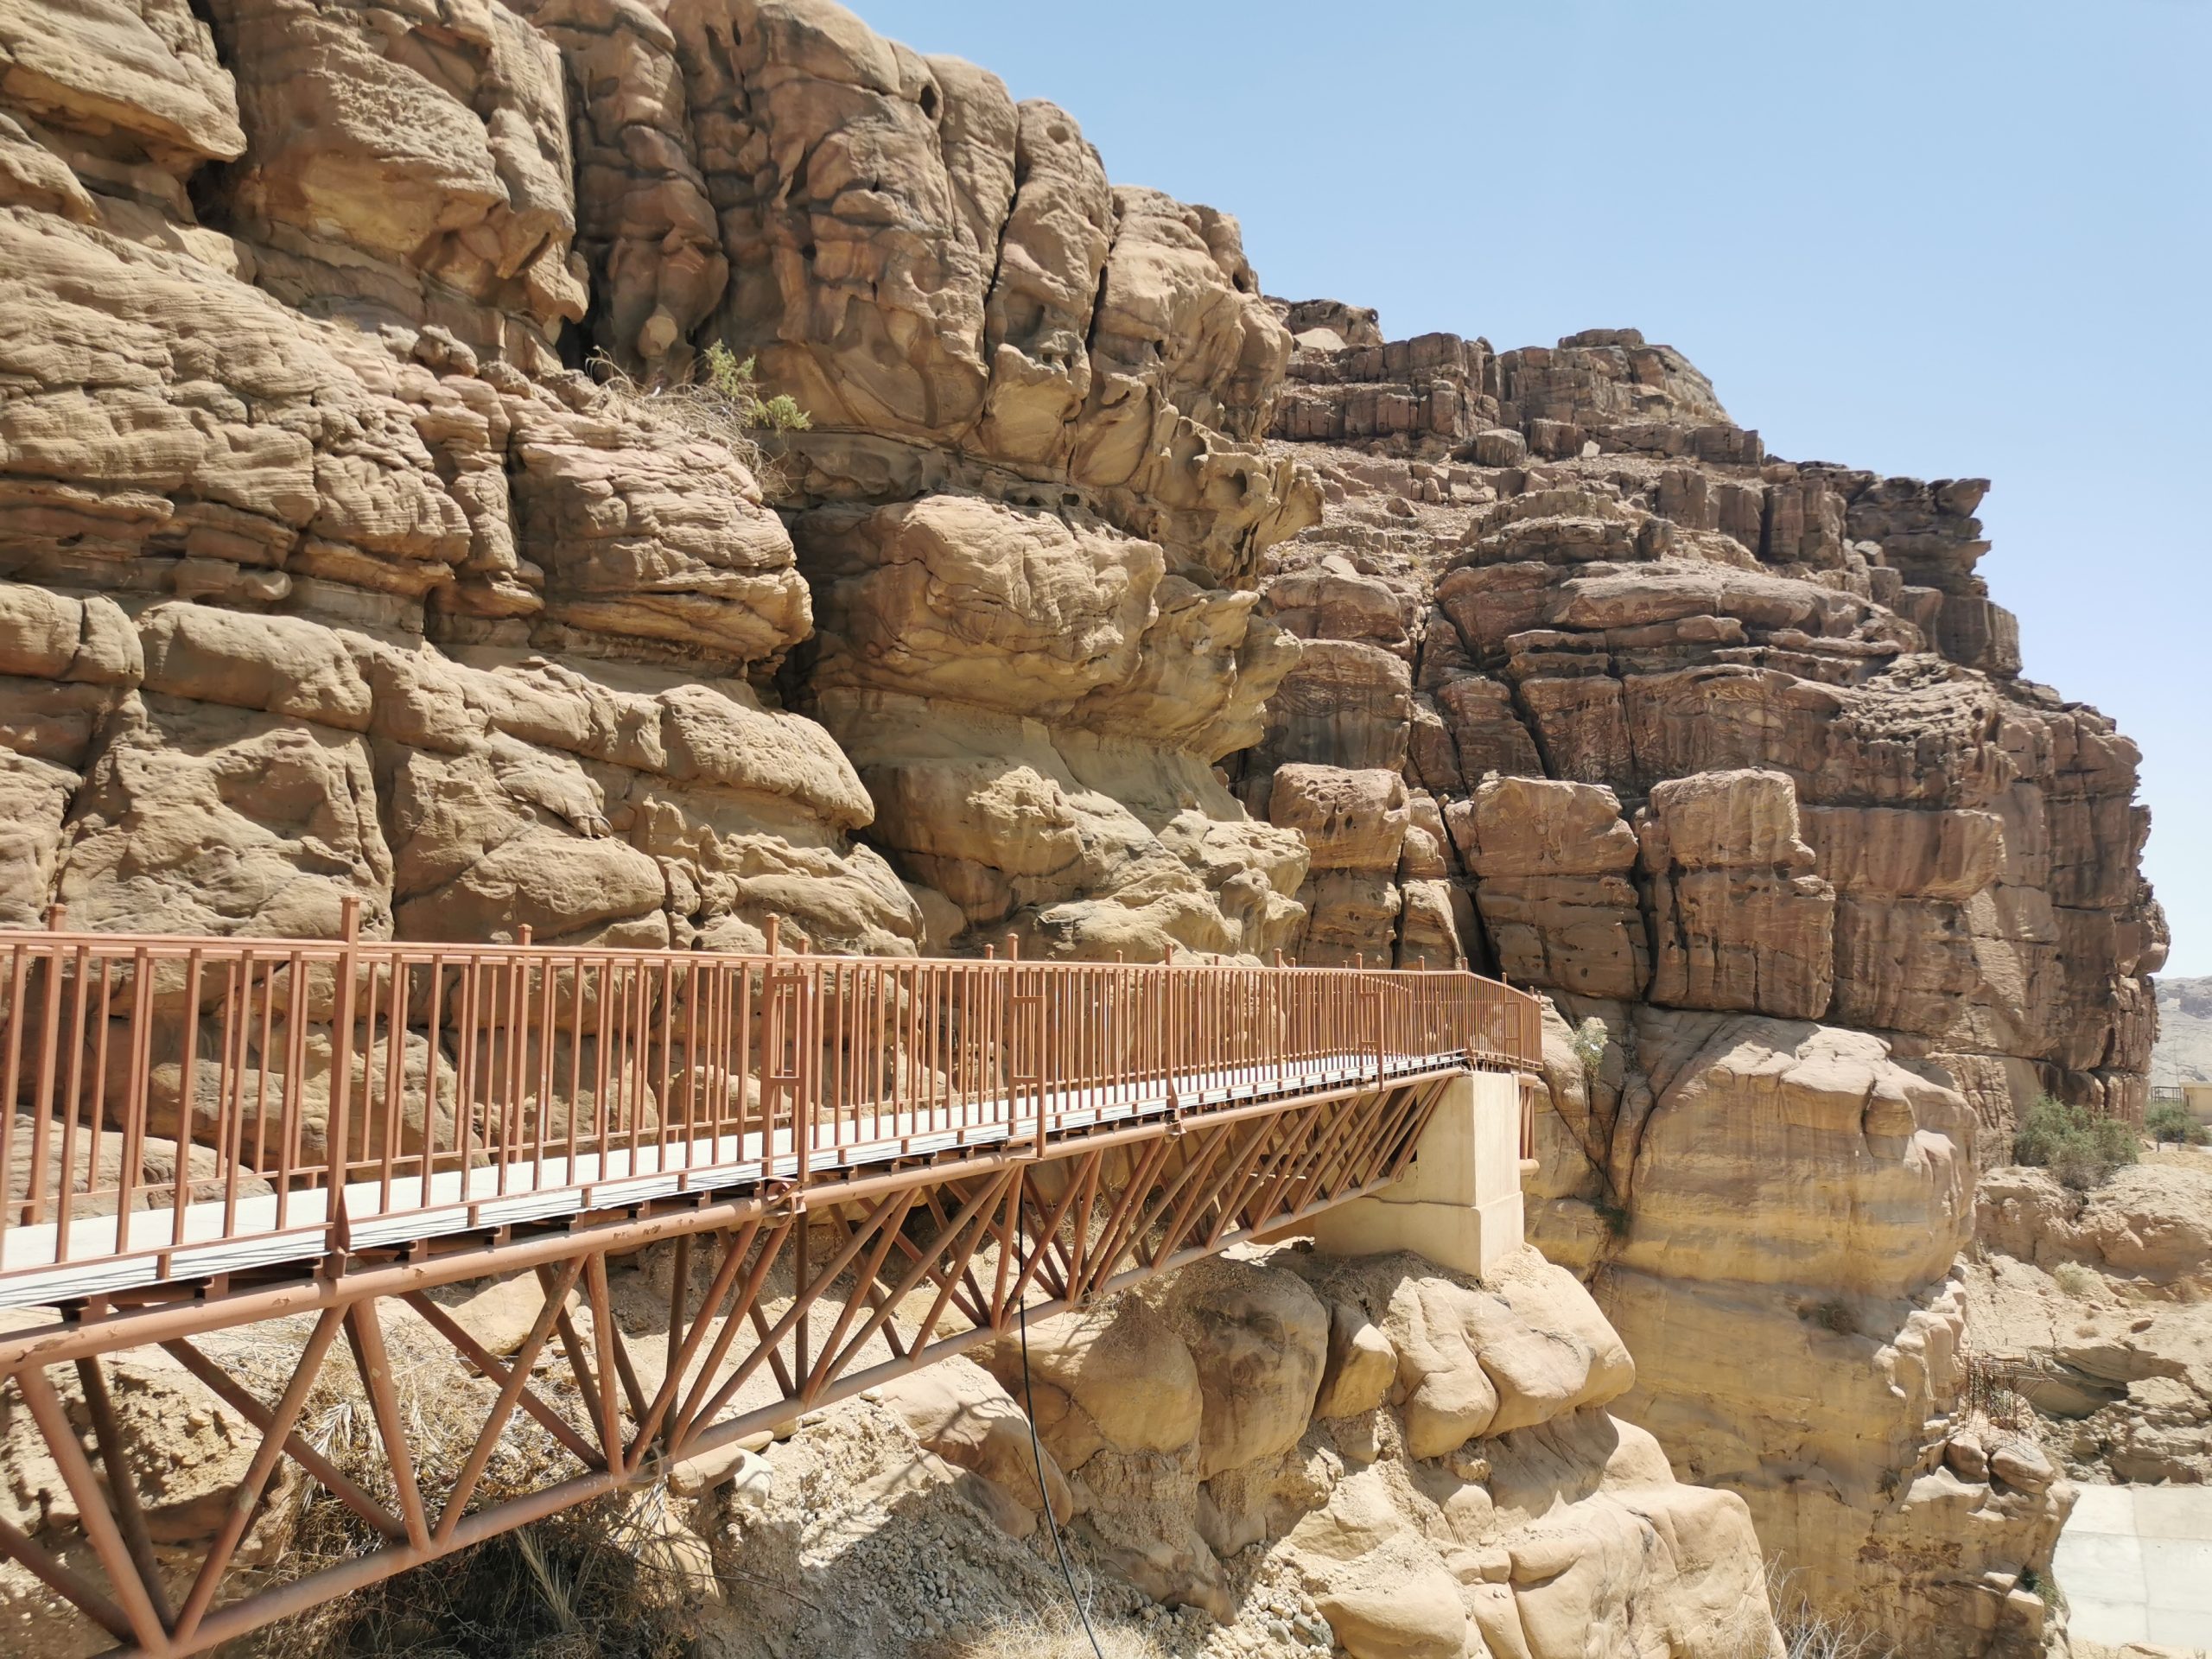 wadi mujib canyon jordania traveladdicr